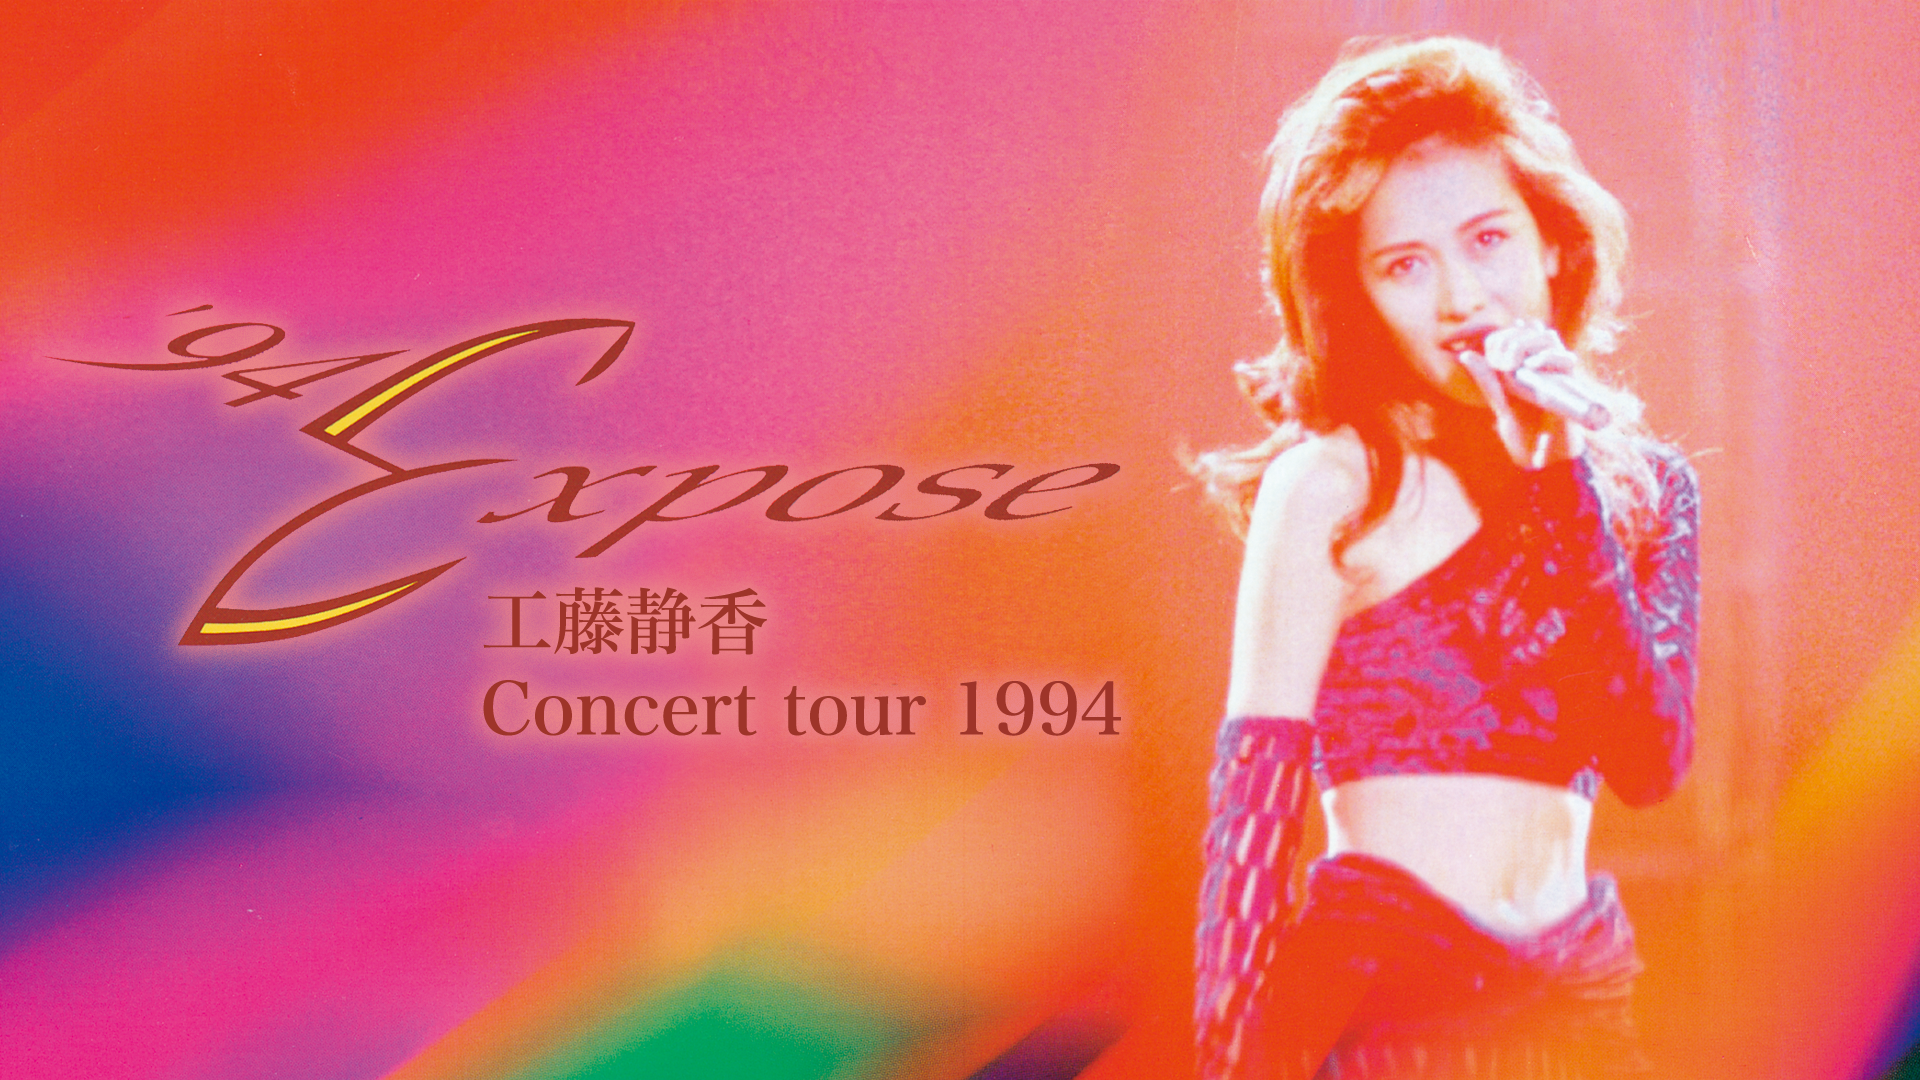 工藤静香 1997 DRESS CONCERT TOUR(音楽・ライブ / 1997) - 動画配信 | U-NEXT 31日間無料トライアル